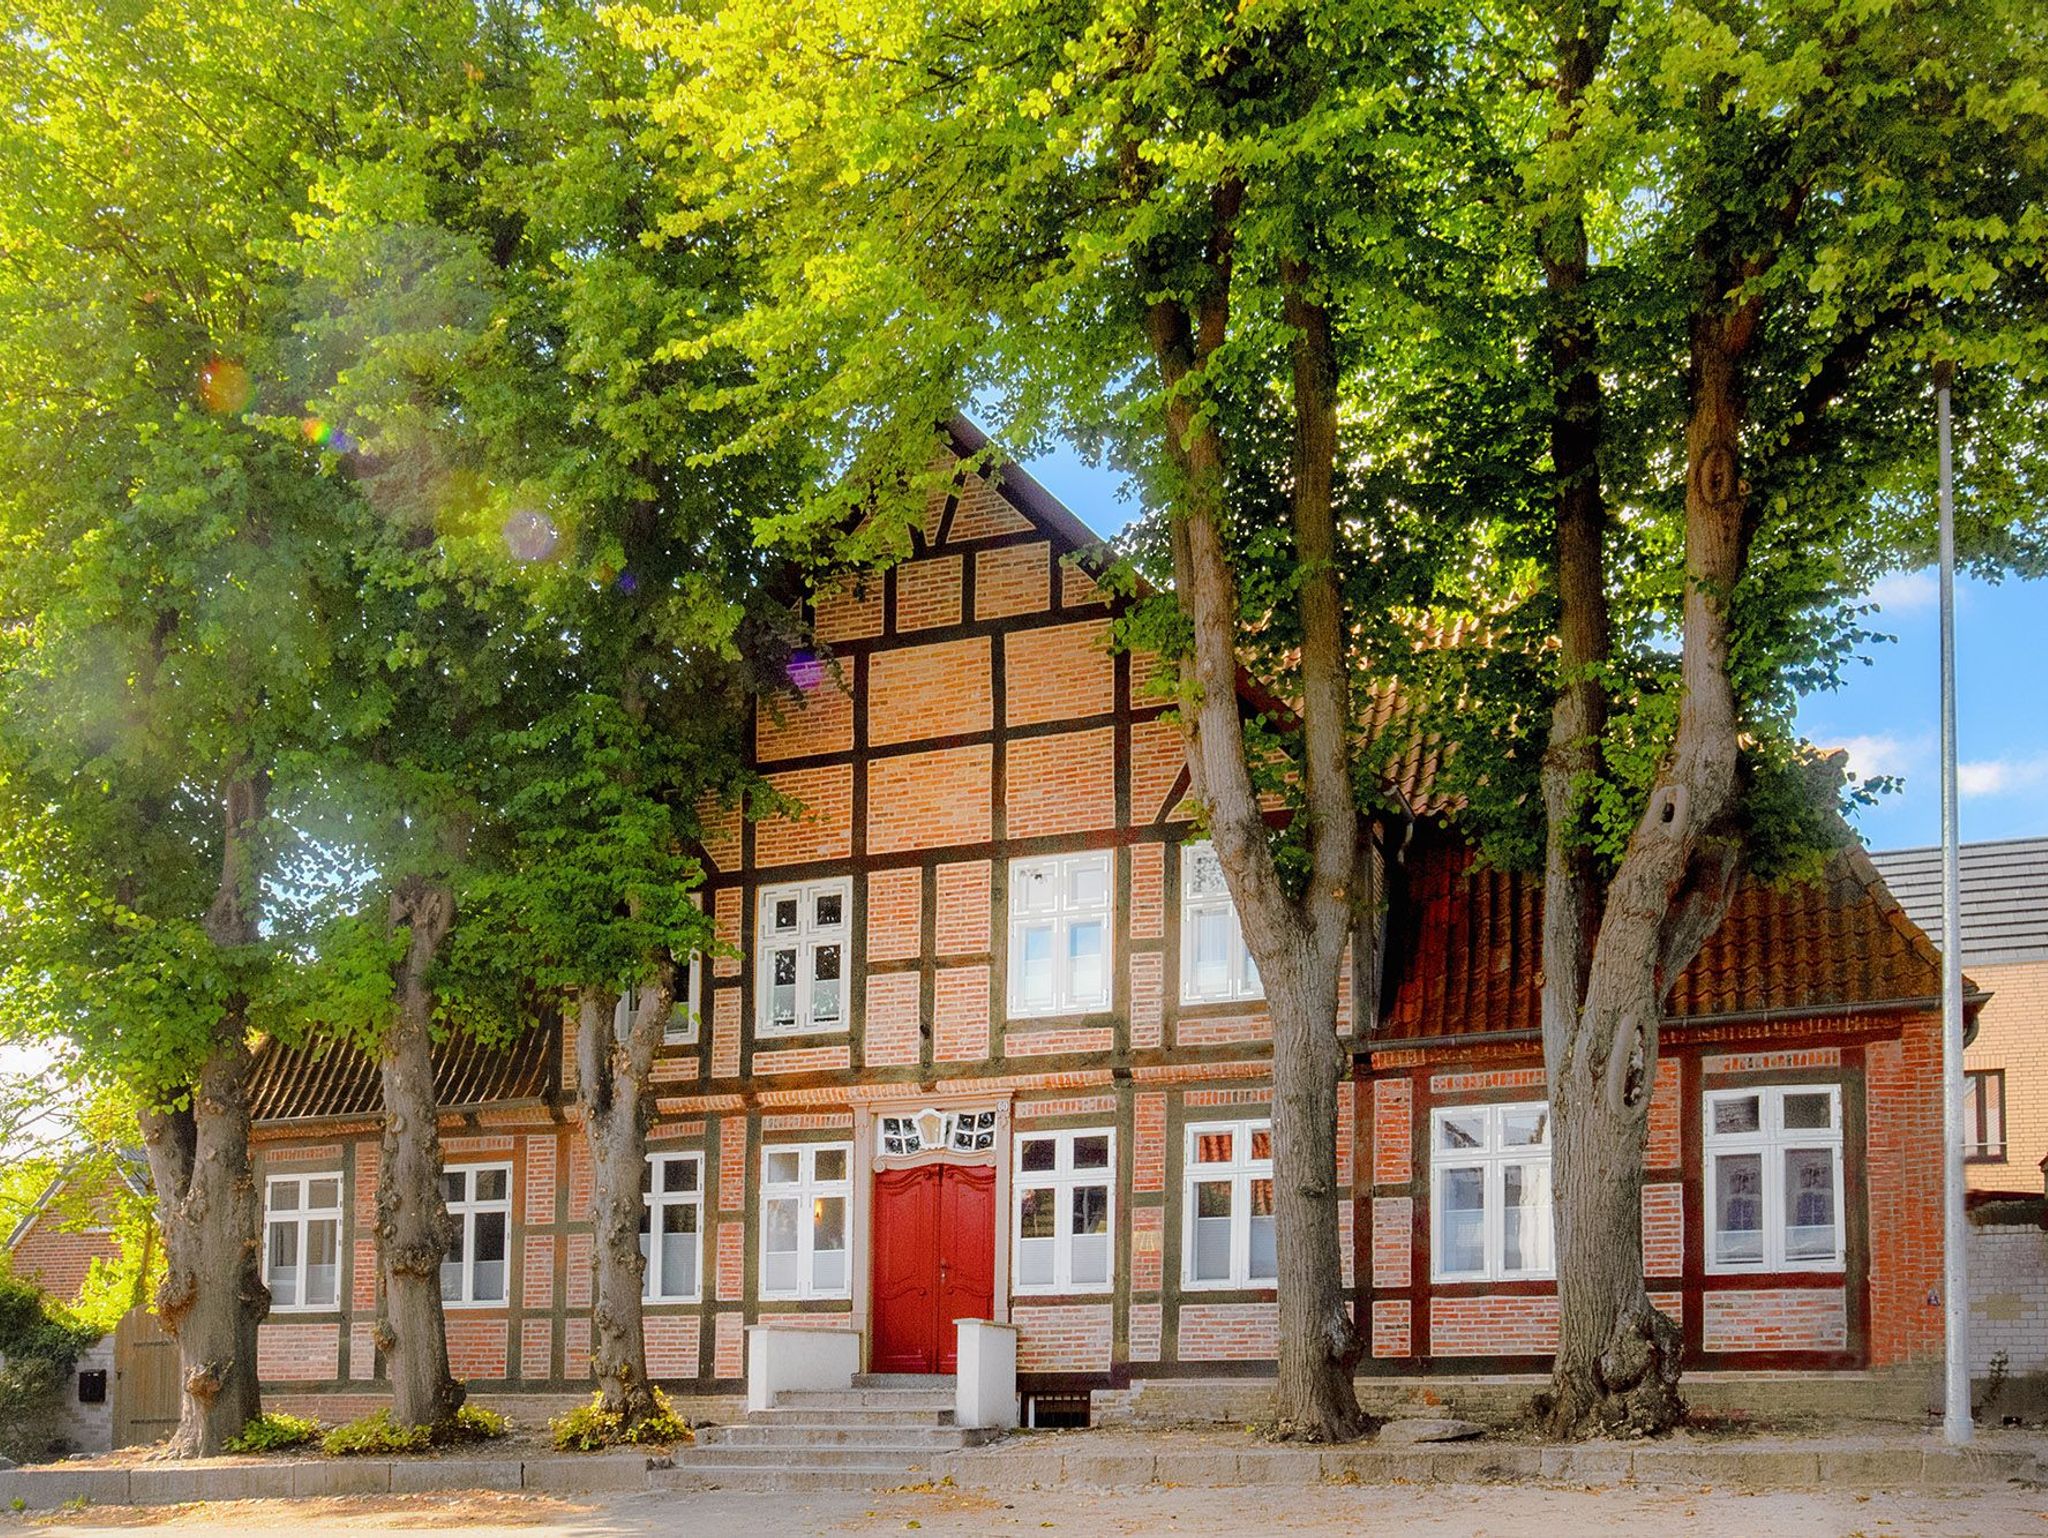 Sassnitzer Hotel mit Bäderarchitektur, Seeblick und Sauna